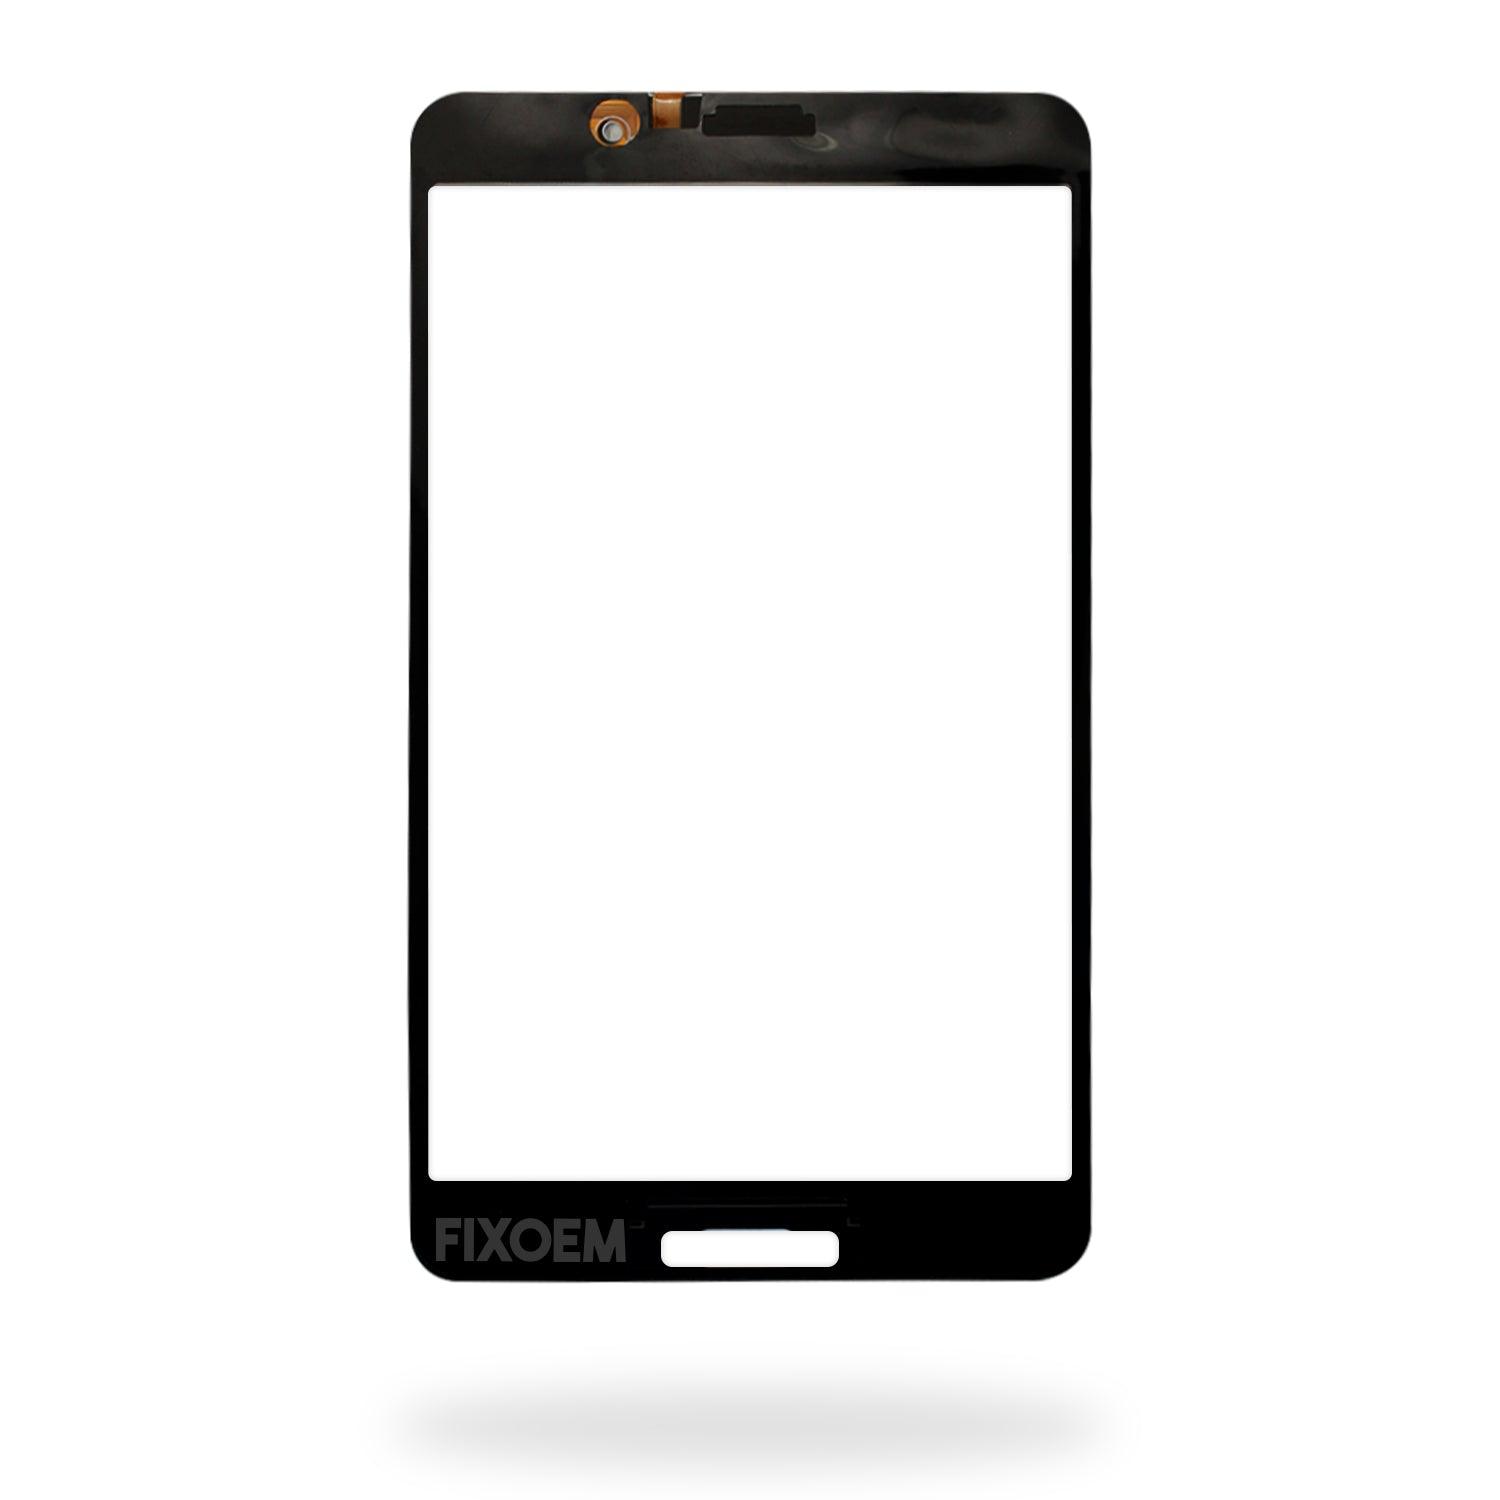 Touch Samsung Tab 4 T230 a solo $ 90.00 Refaccion y puestos celulares, refurbish y microelectronica.- FixOEM